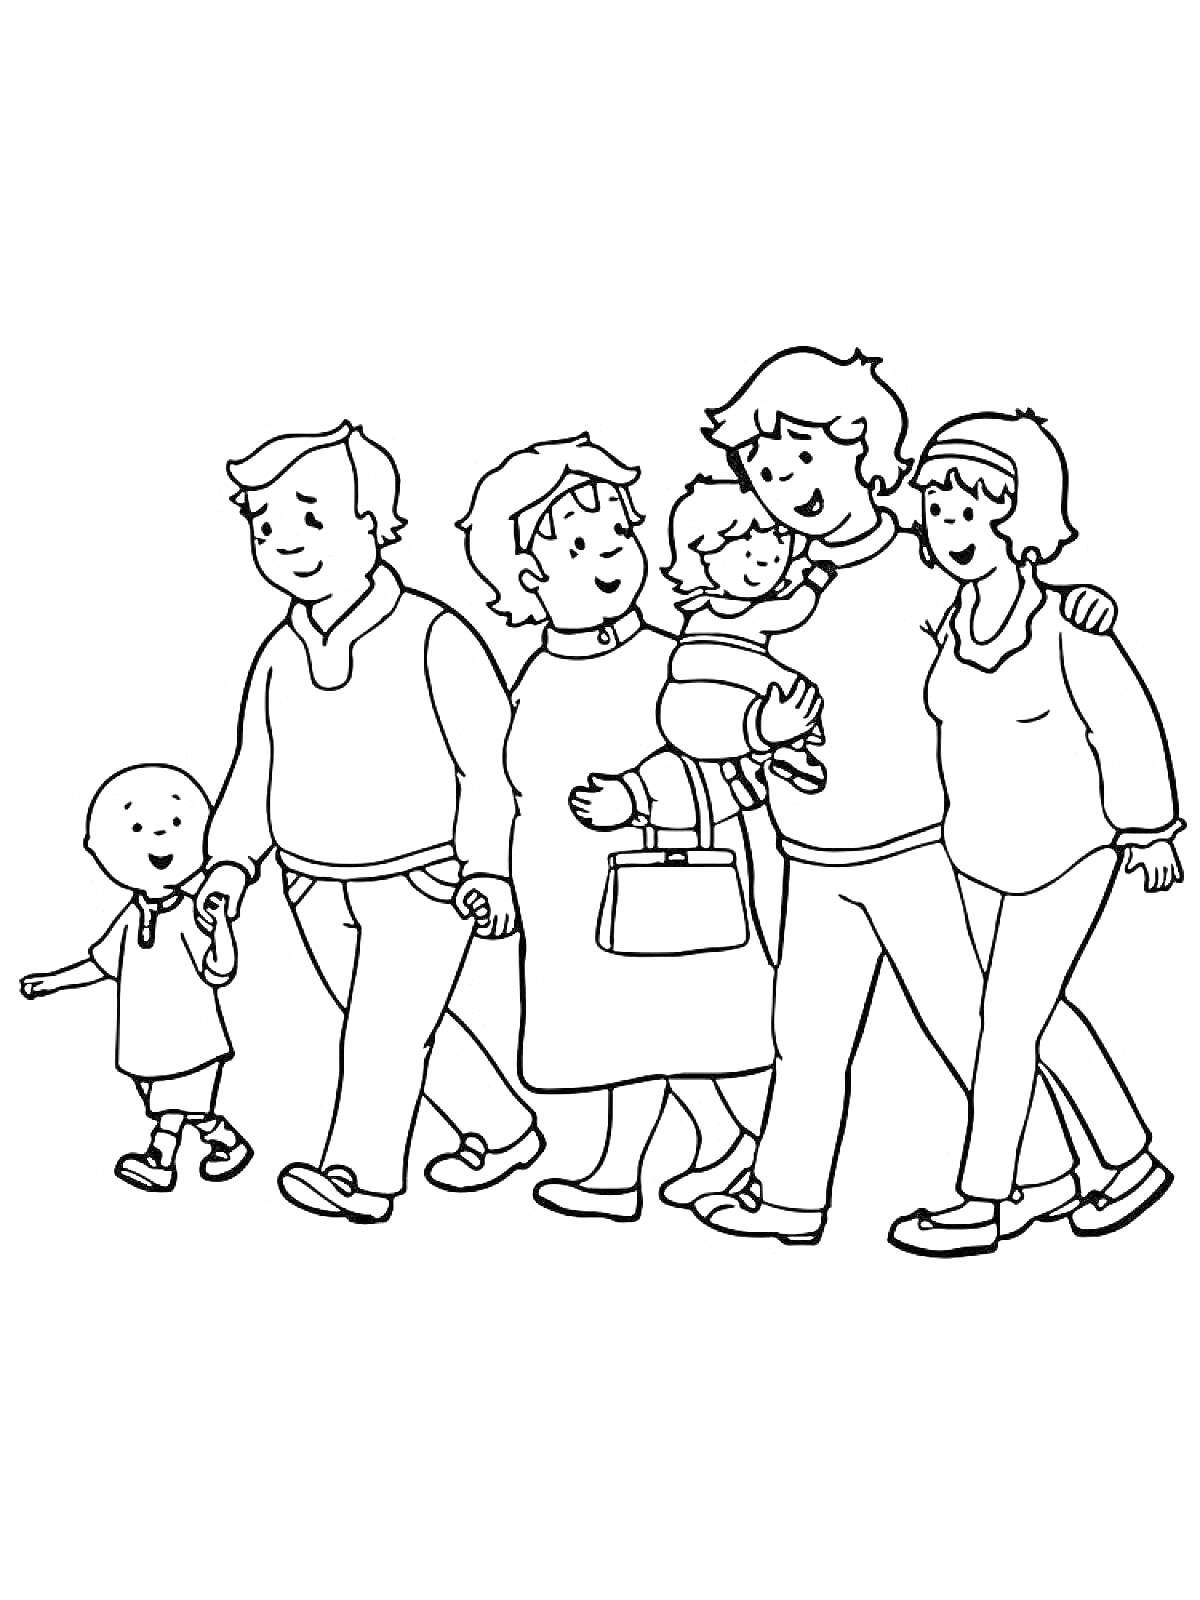 Семья на прогулке: взрослые и дети идут вместе, держась за руки